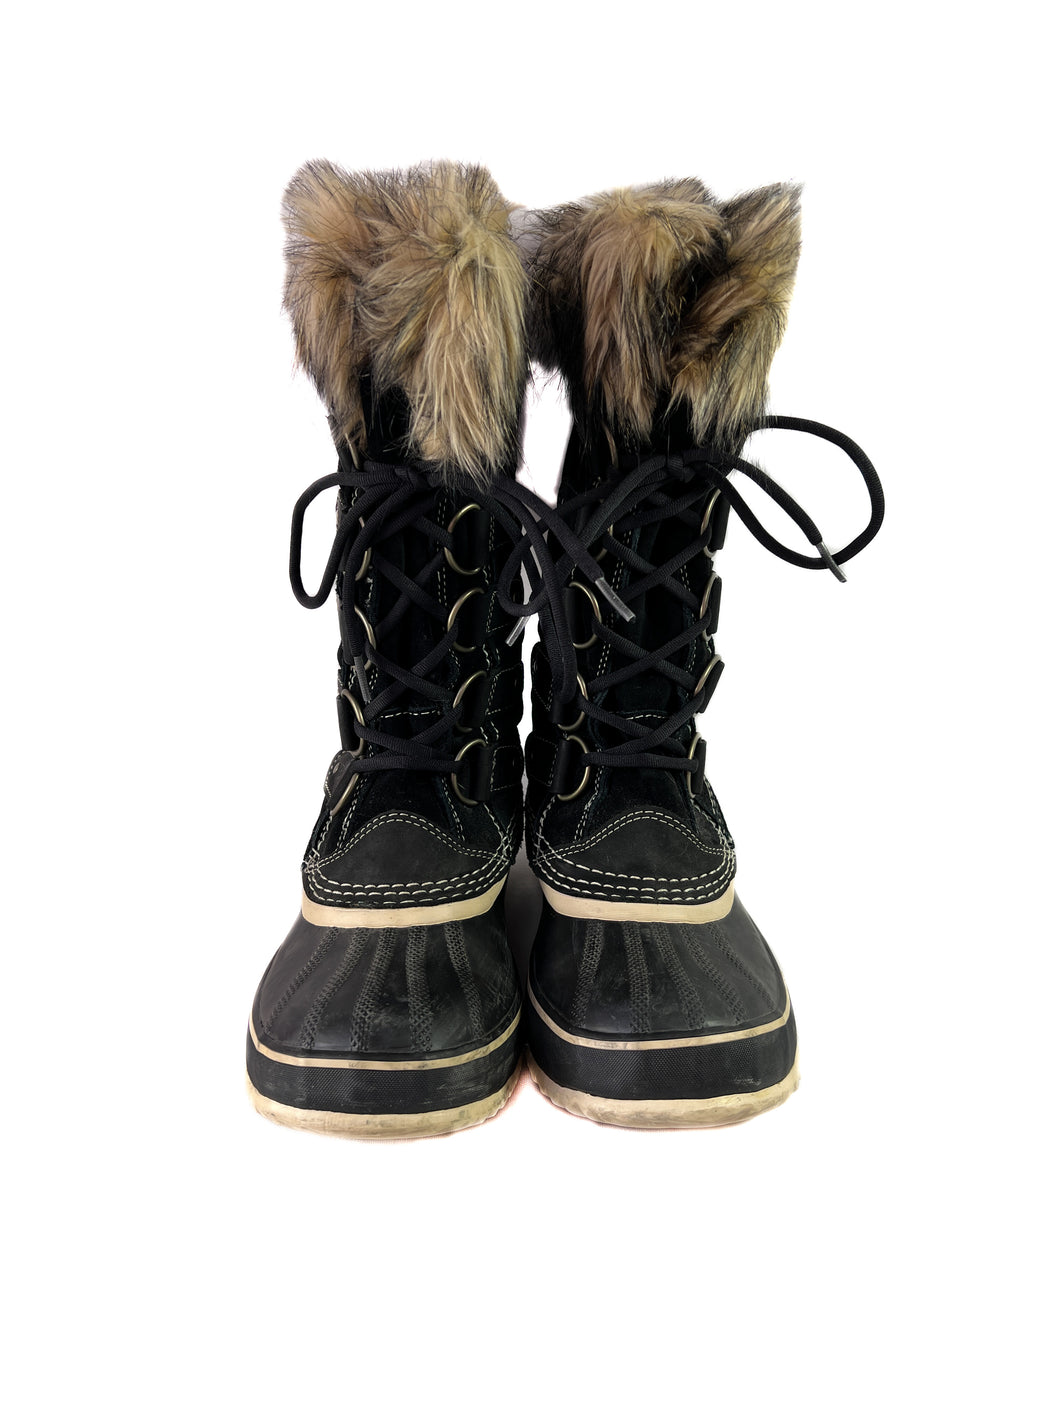 Sorel black Joan of Arctic boots size 9.5